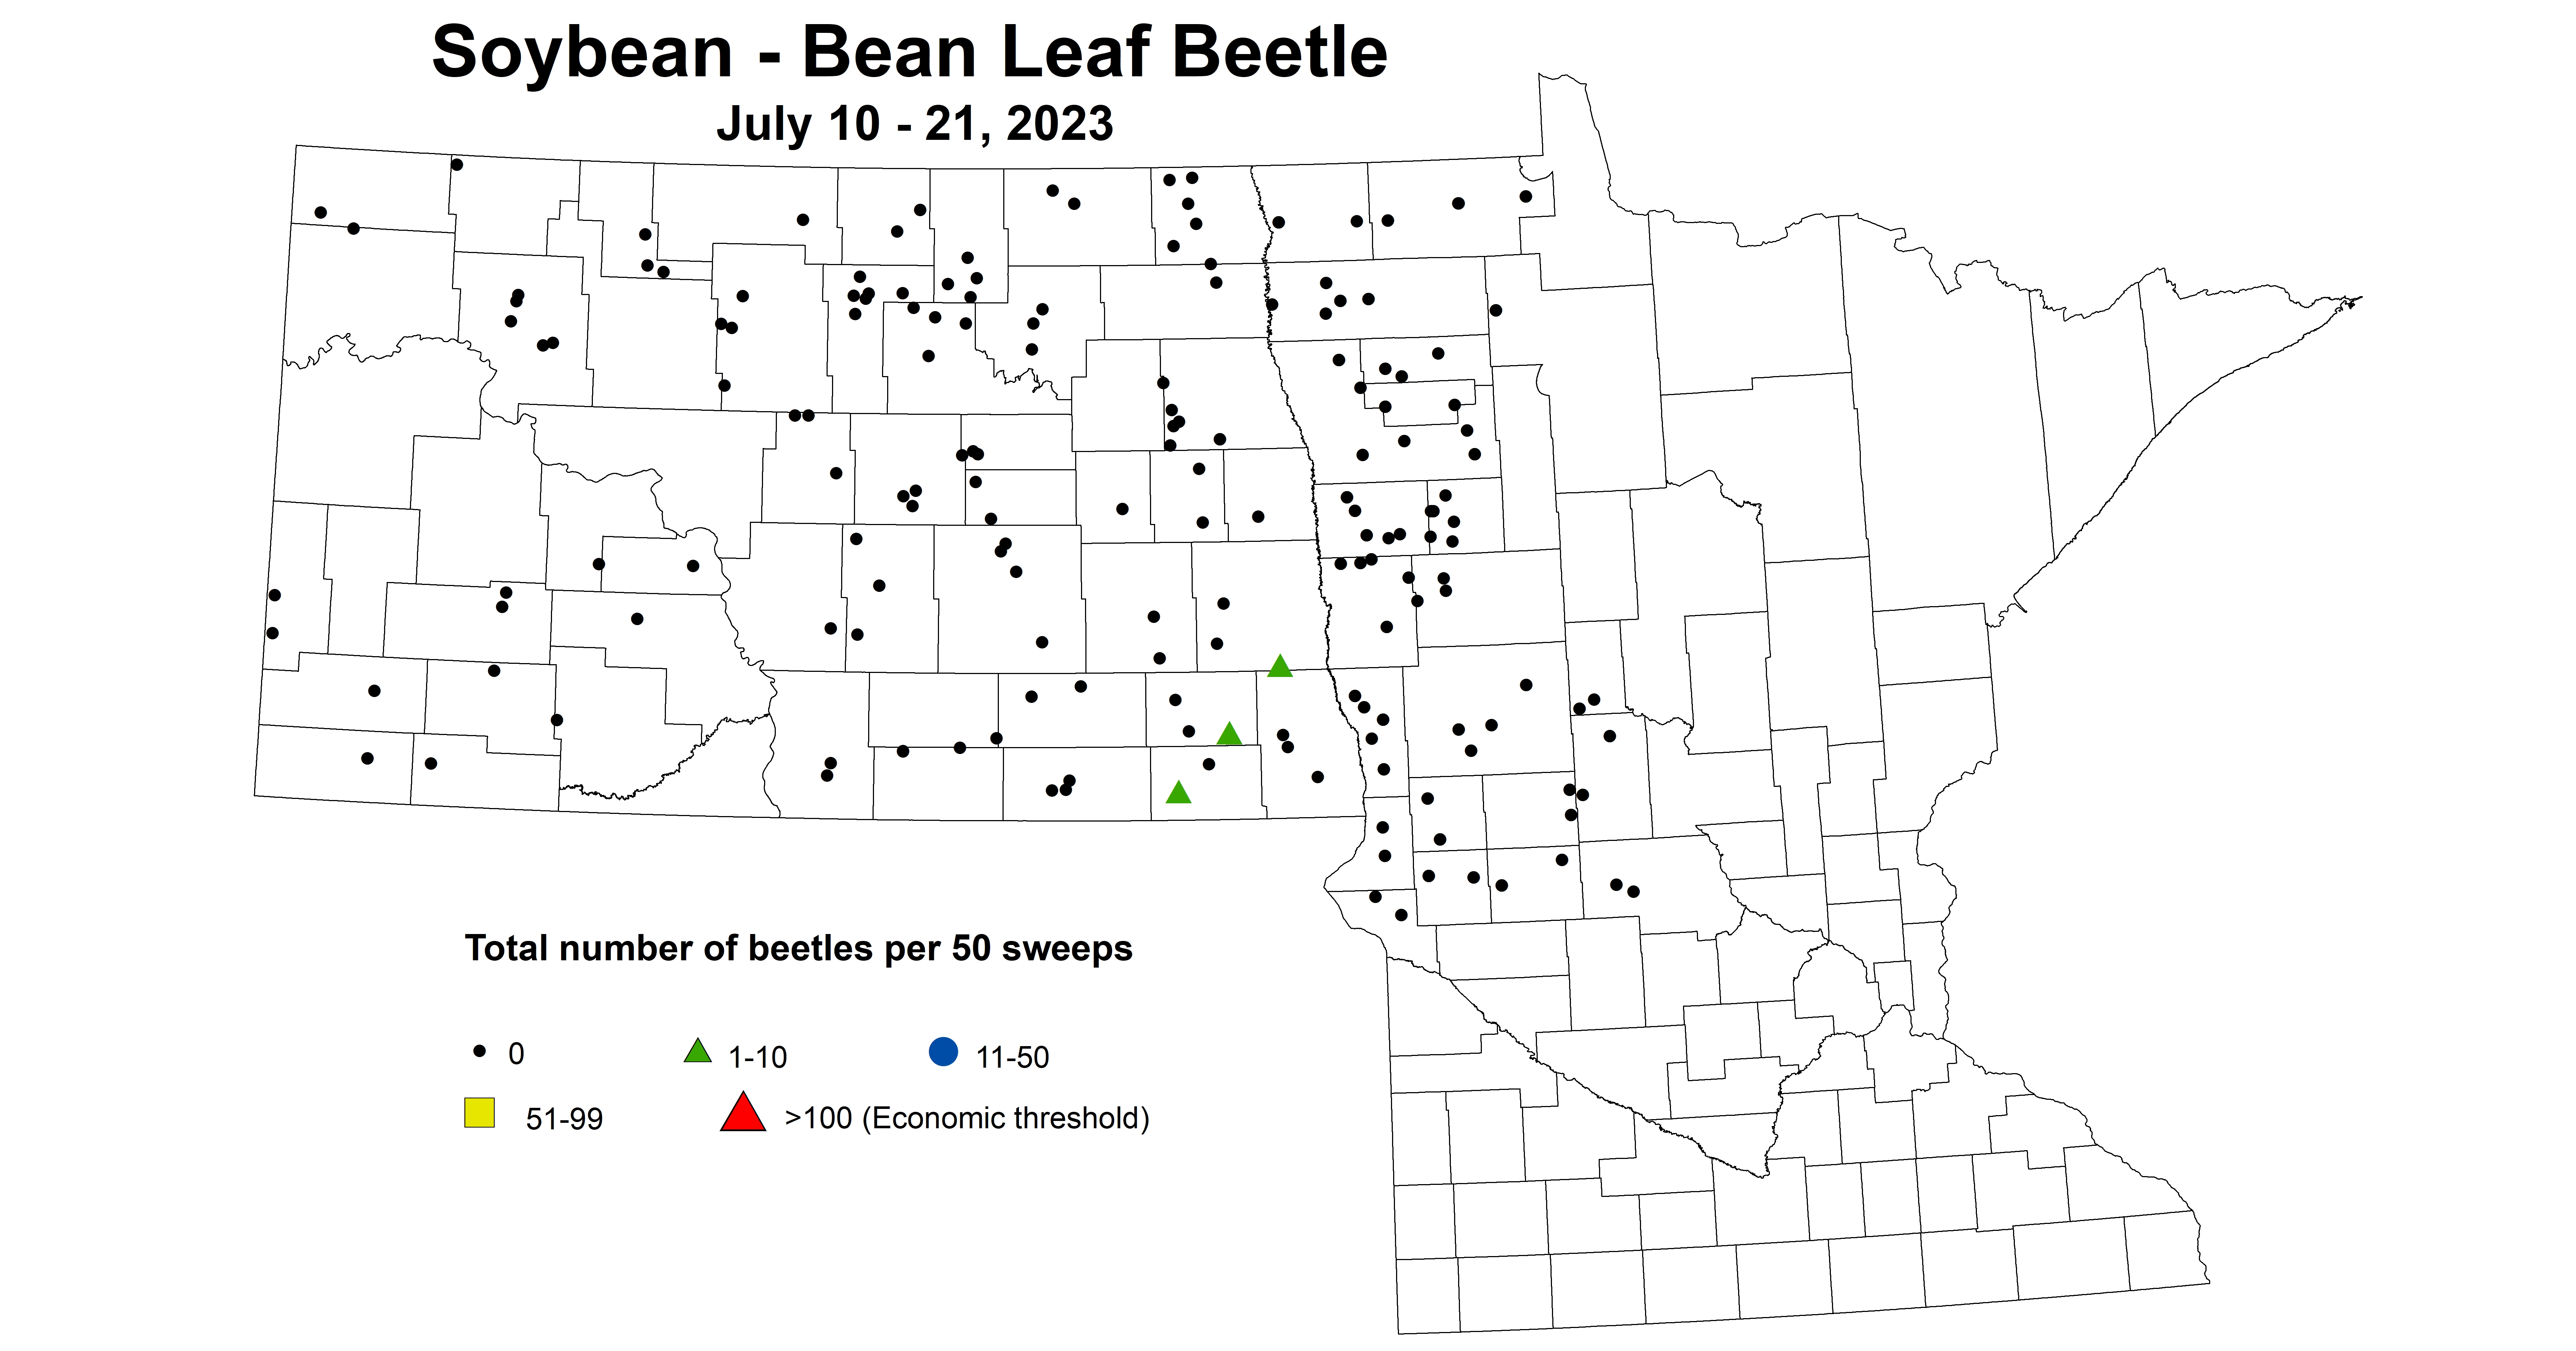 soybean BLB number of beetles per 50 sweeps July 10-21 2023